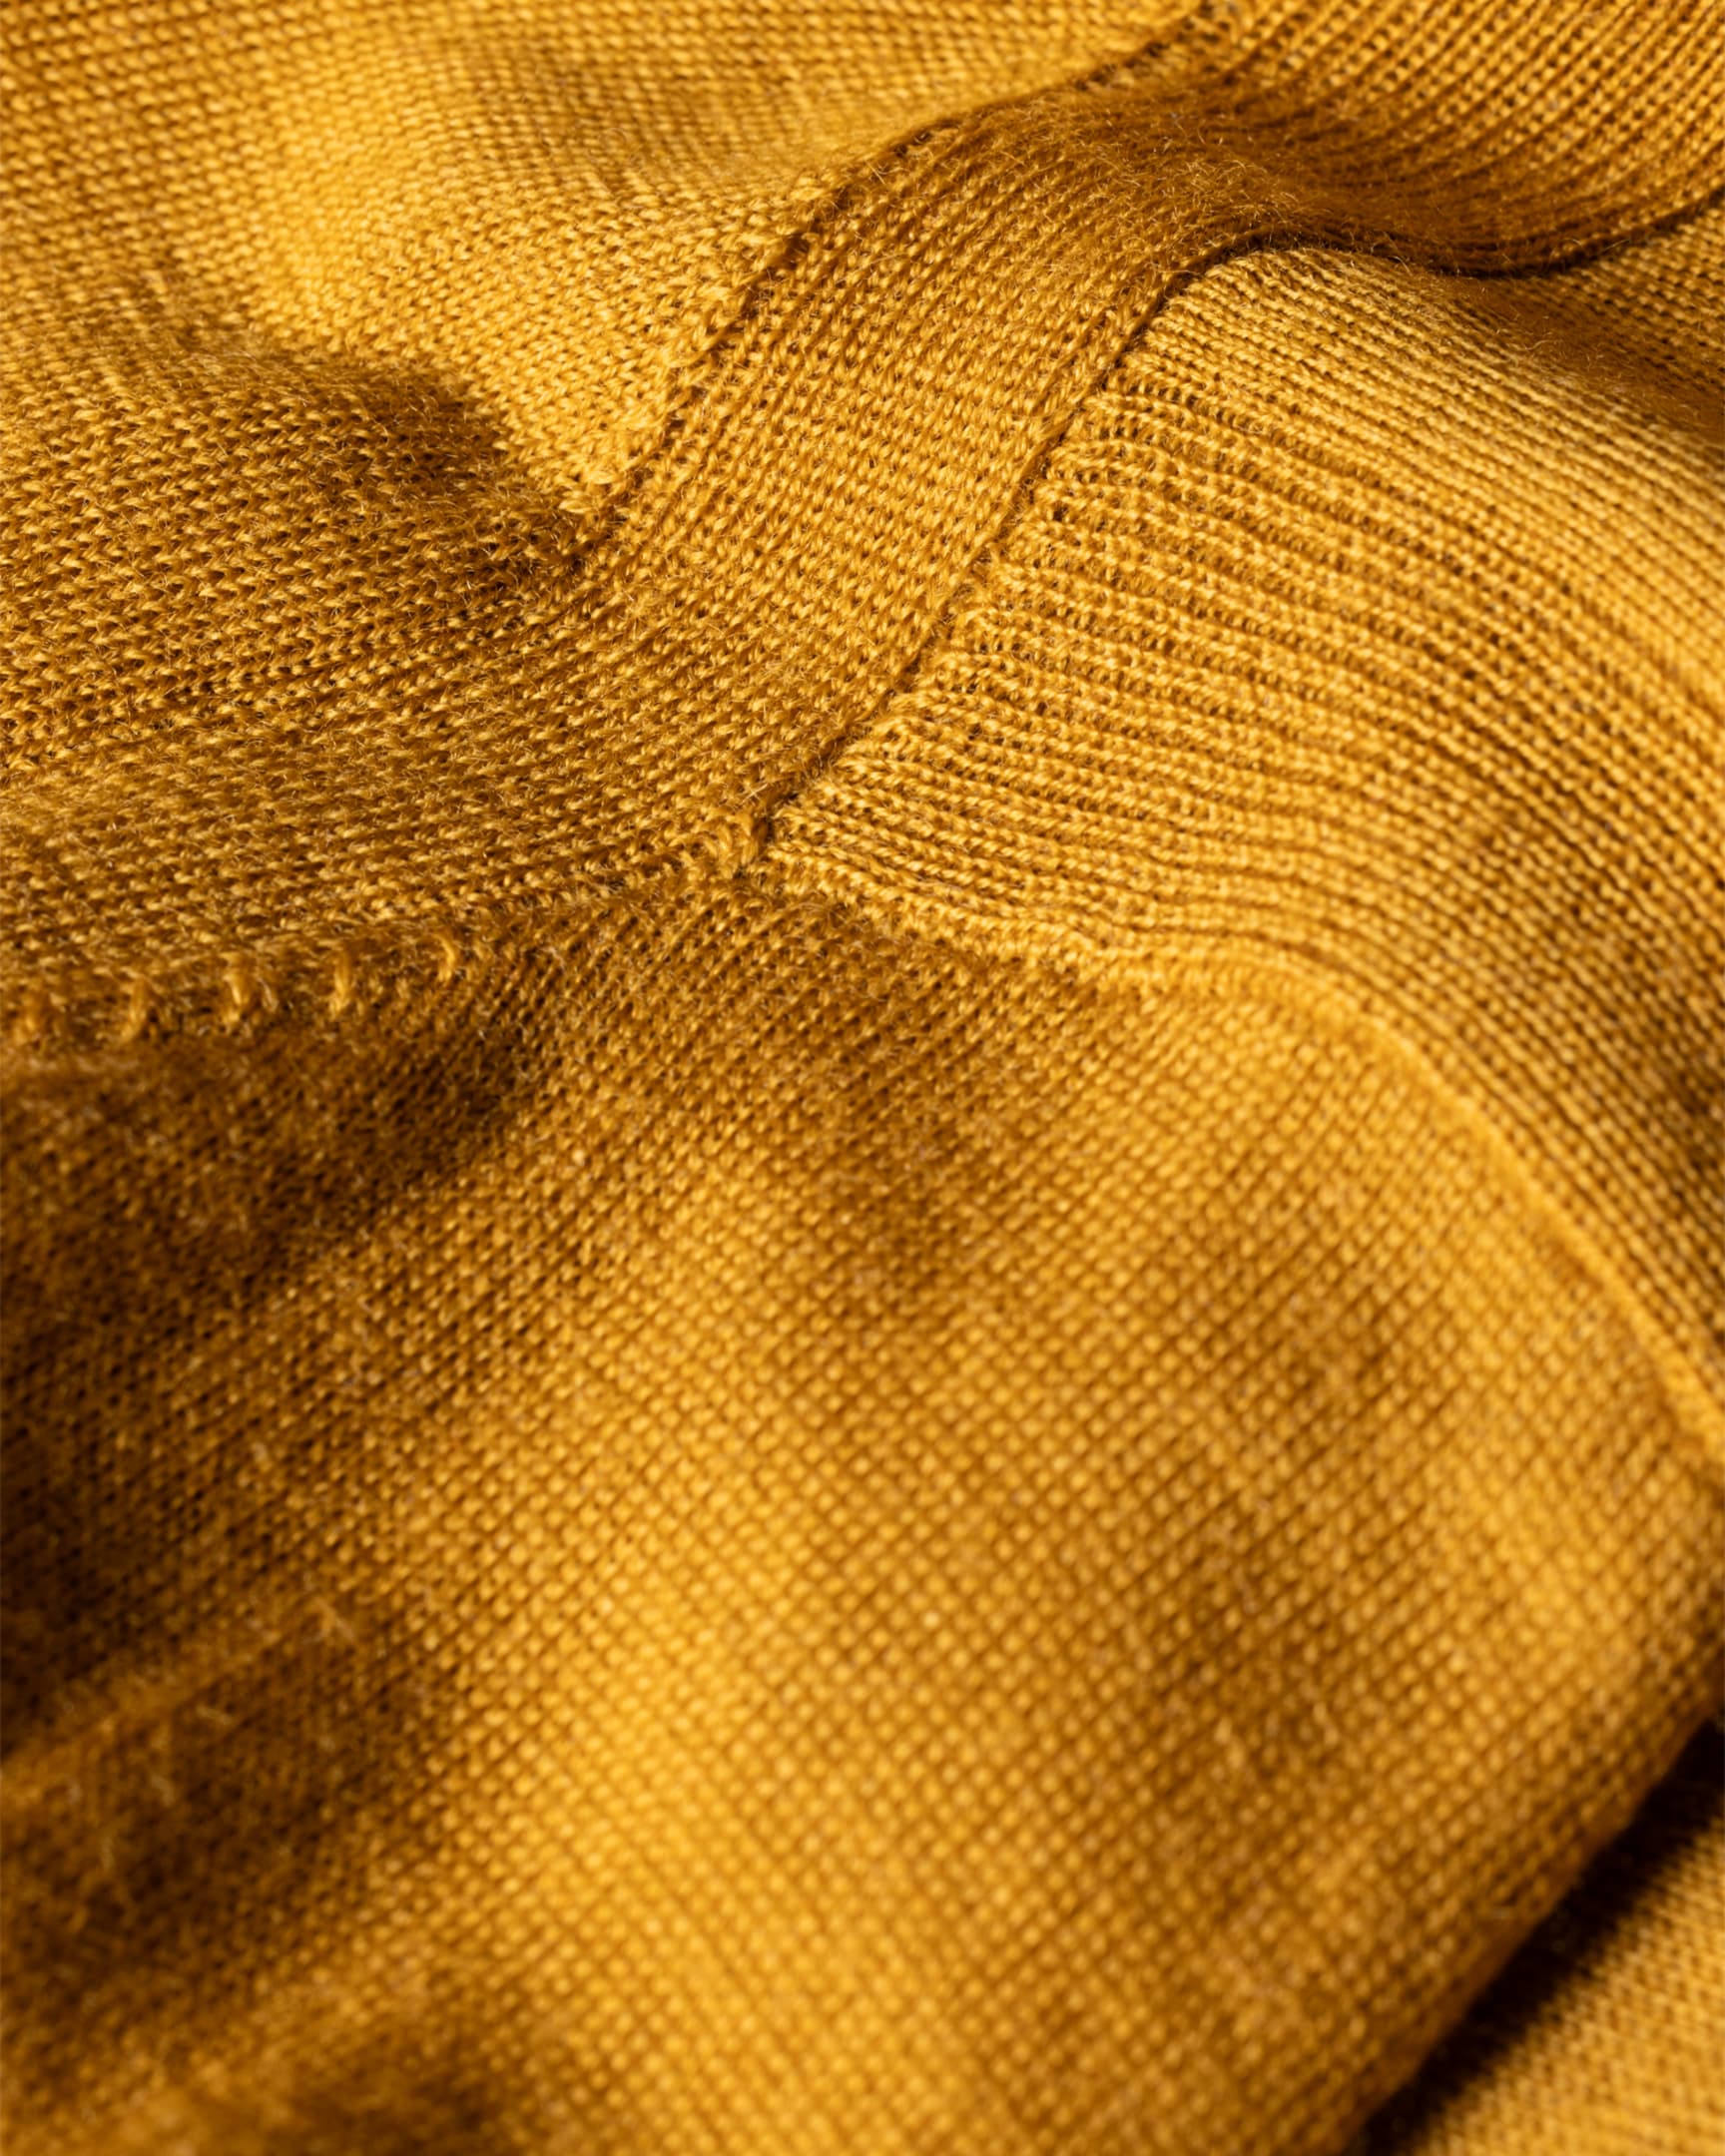 Detail View - Mustard Merino Wool Sweater Paul Smith